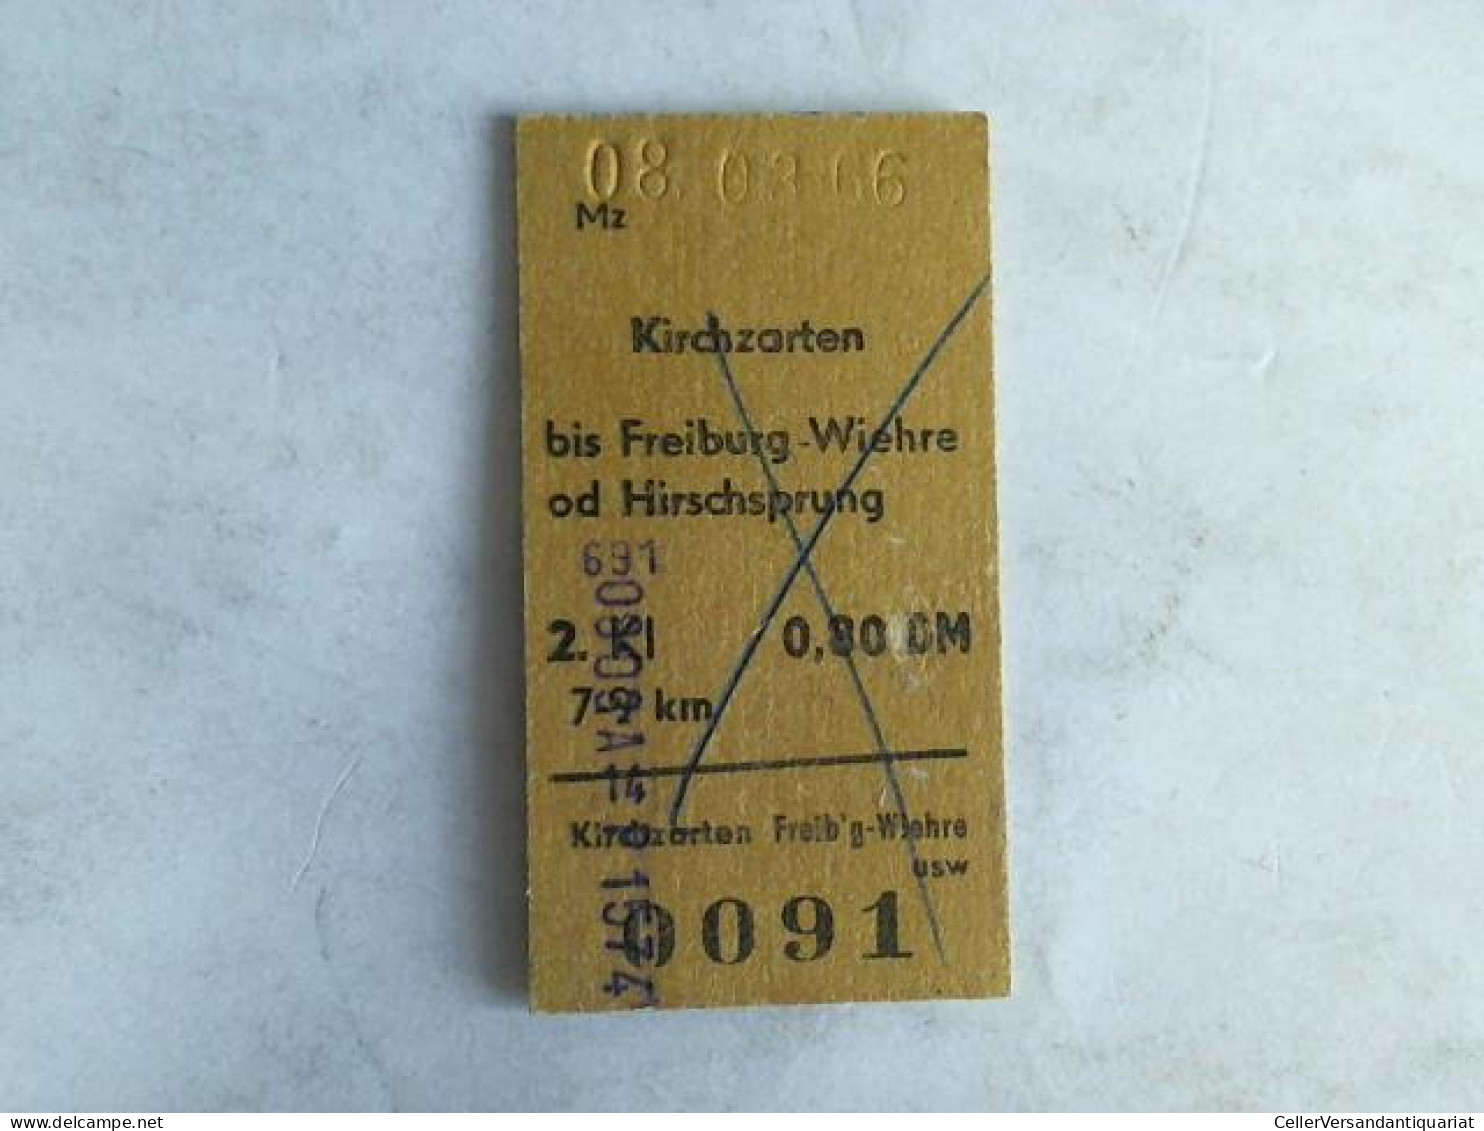 Fahrkarte Kirchzarten Bis Freiburg-Wiehre Od Hirschsprung. 2. Klasse Von (Eisenbahn-Fahrkarte) - Unclassified